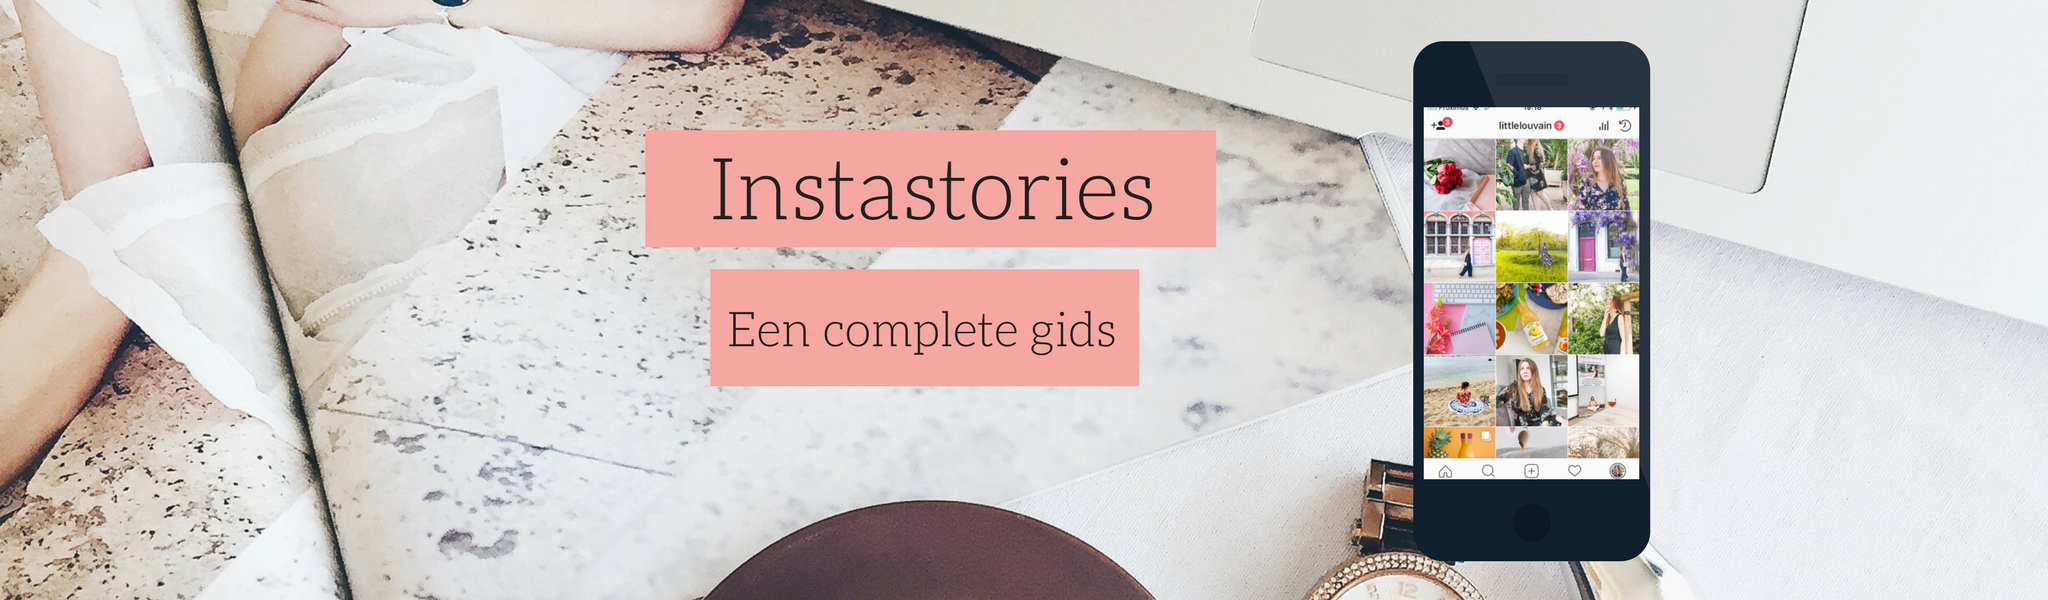 De complete gids over Instagram Stories voor bedrijven + gratis templates